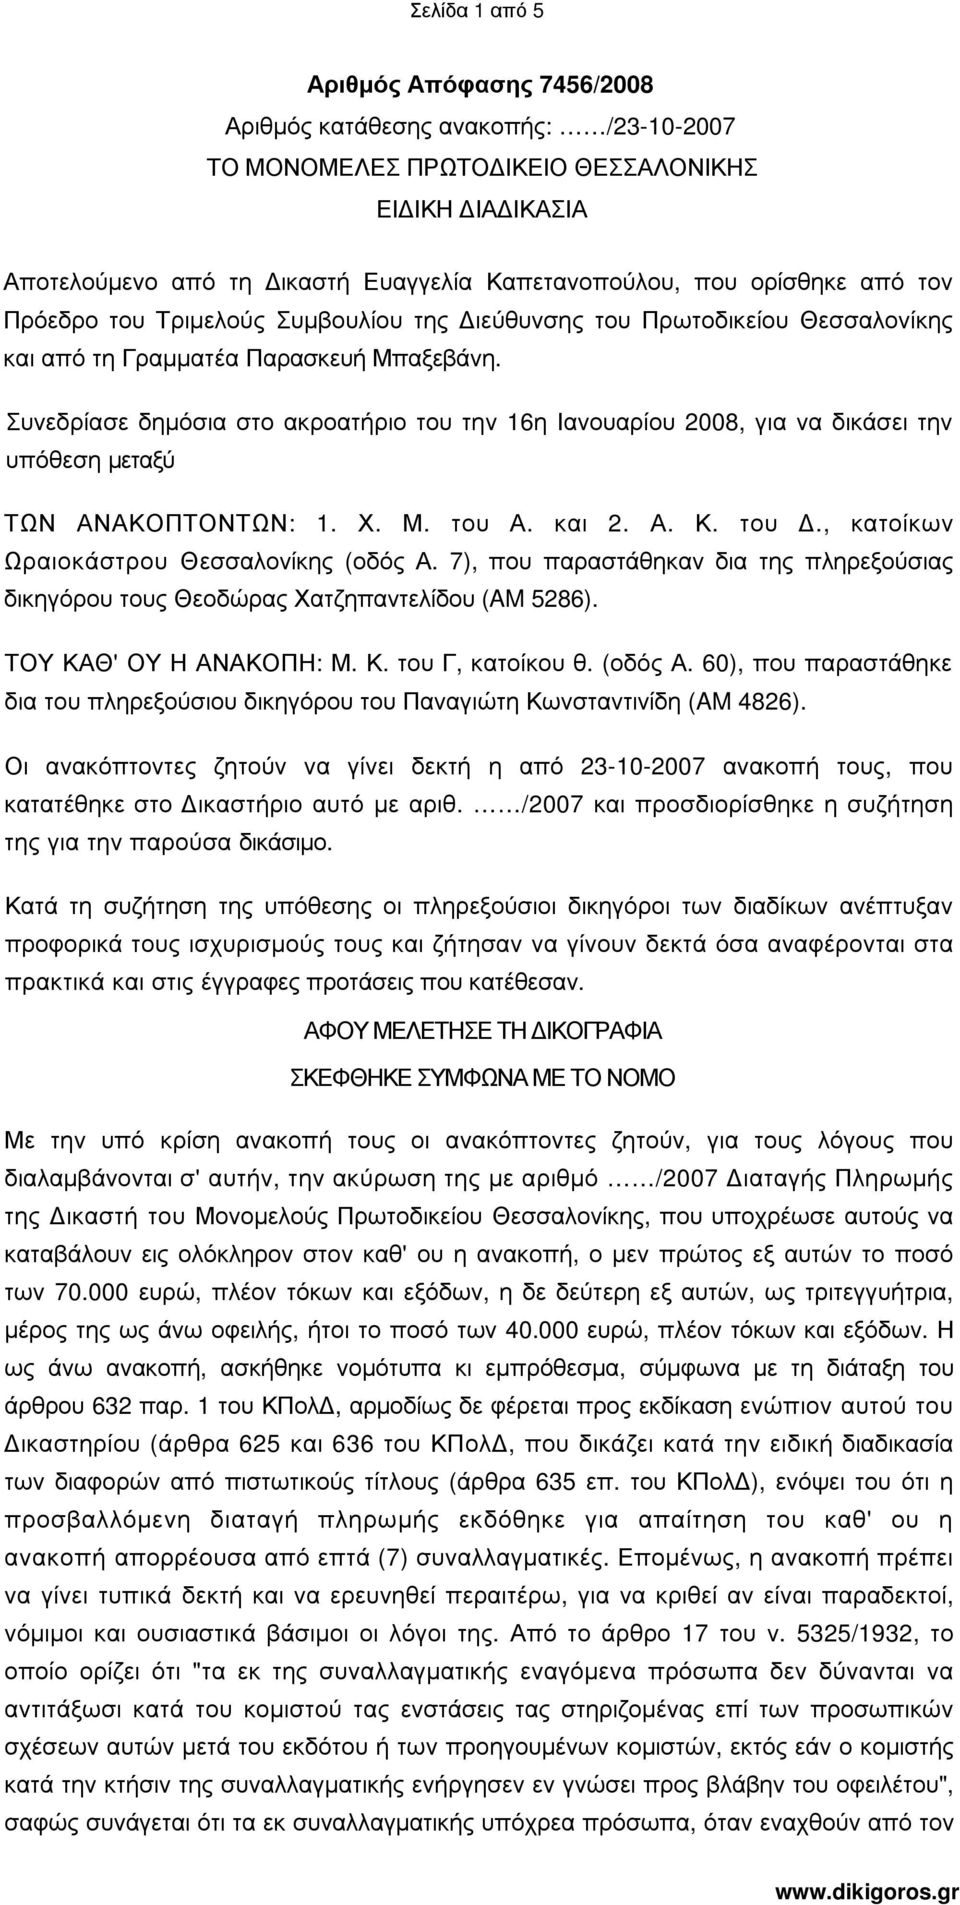 Συνεδρίασε δηµόσια στο ακροατήριο του την 16η Ιανουαρίου 2008, για να δικάσει την υπόθεση µεταξύ ΤΩΝ ΑΝΑΚΟΠΤΟΝΤΩΝ: 1. Χ. Μ. του Α. και 2. Α. Κ. του., κατοίκων Ωραιοκάστρου Θεσσαλονίκης (οδός Α.